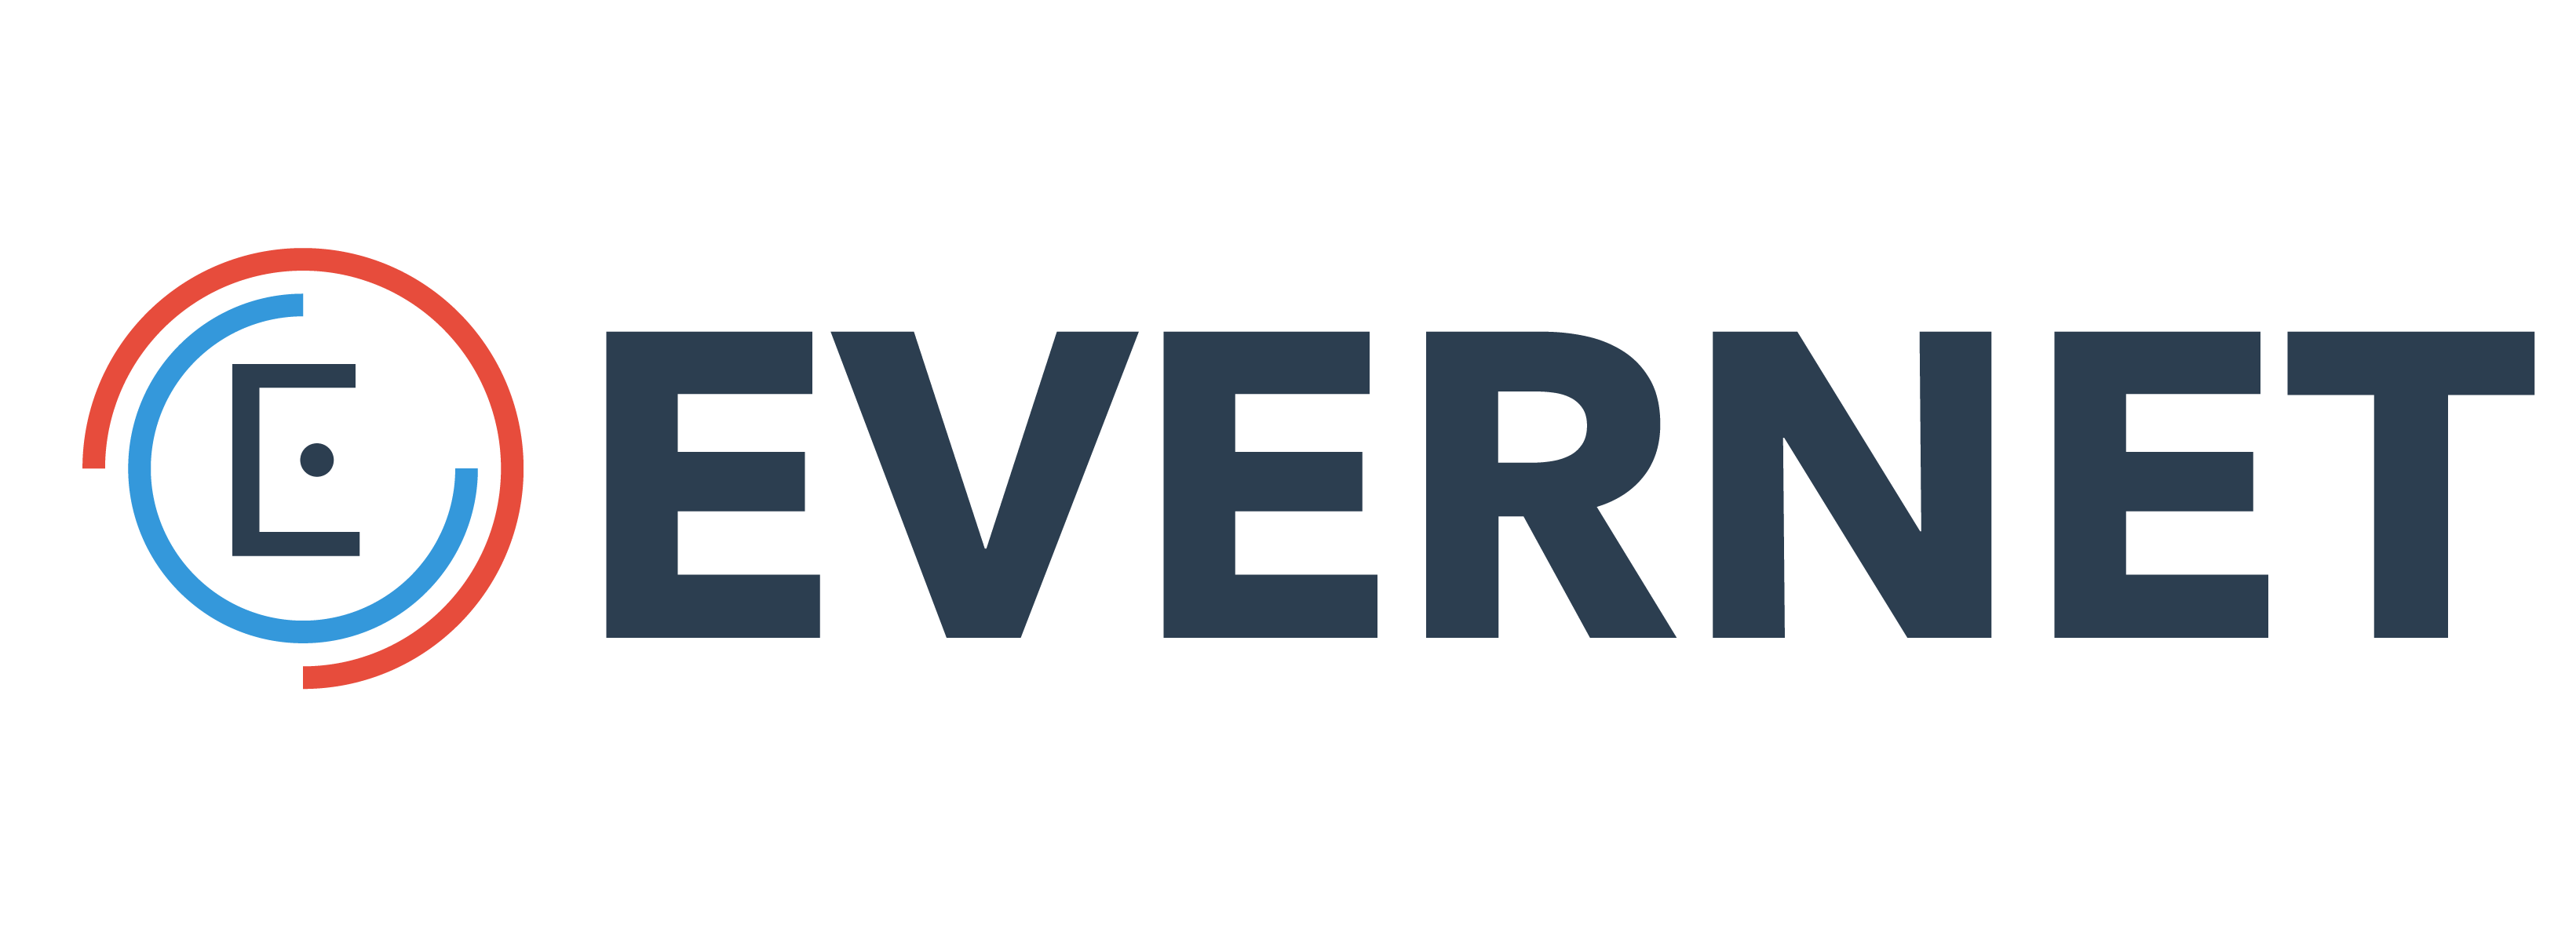 Evernet logo